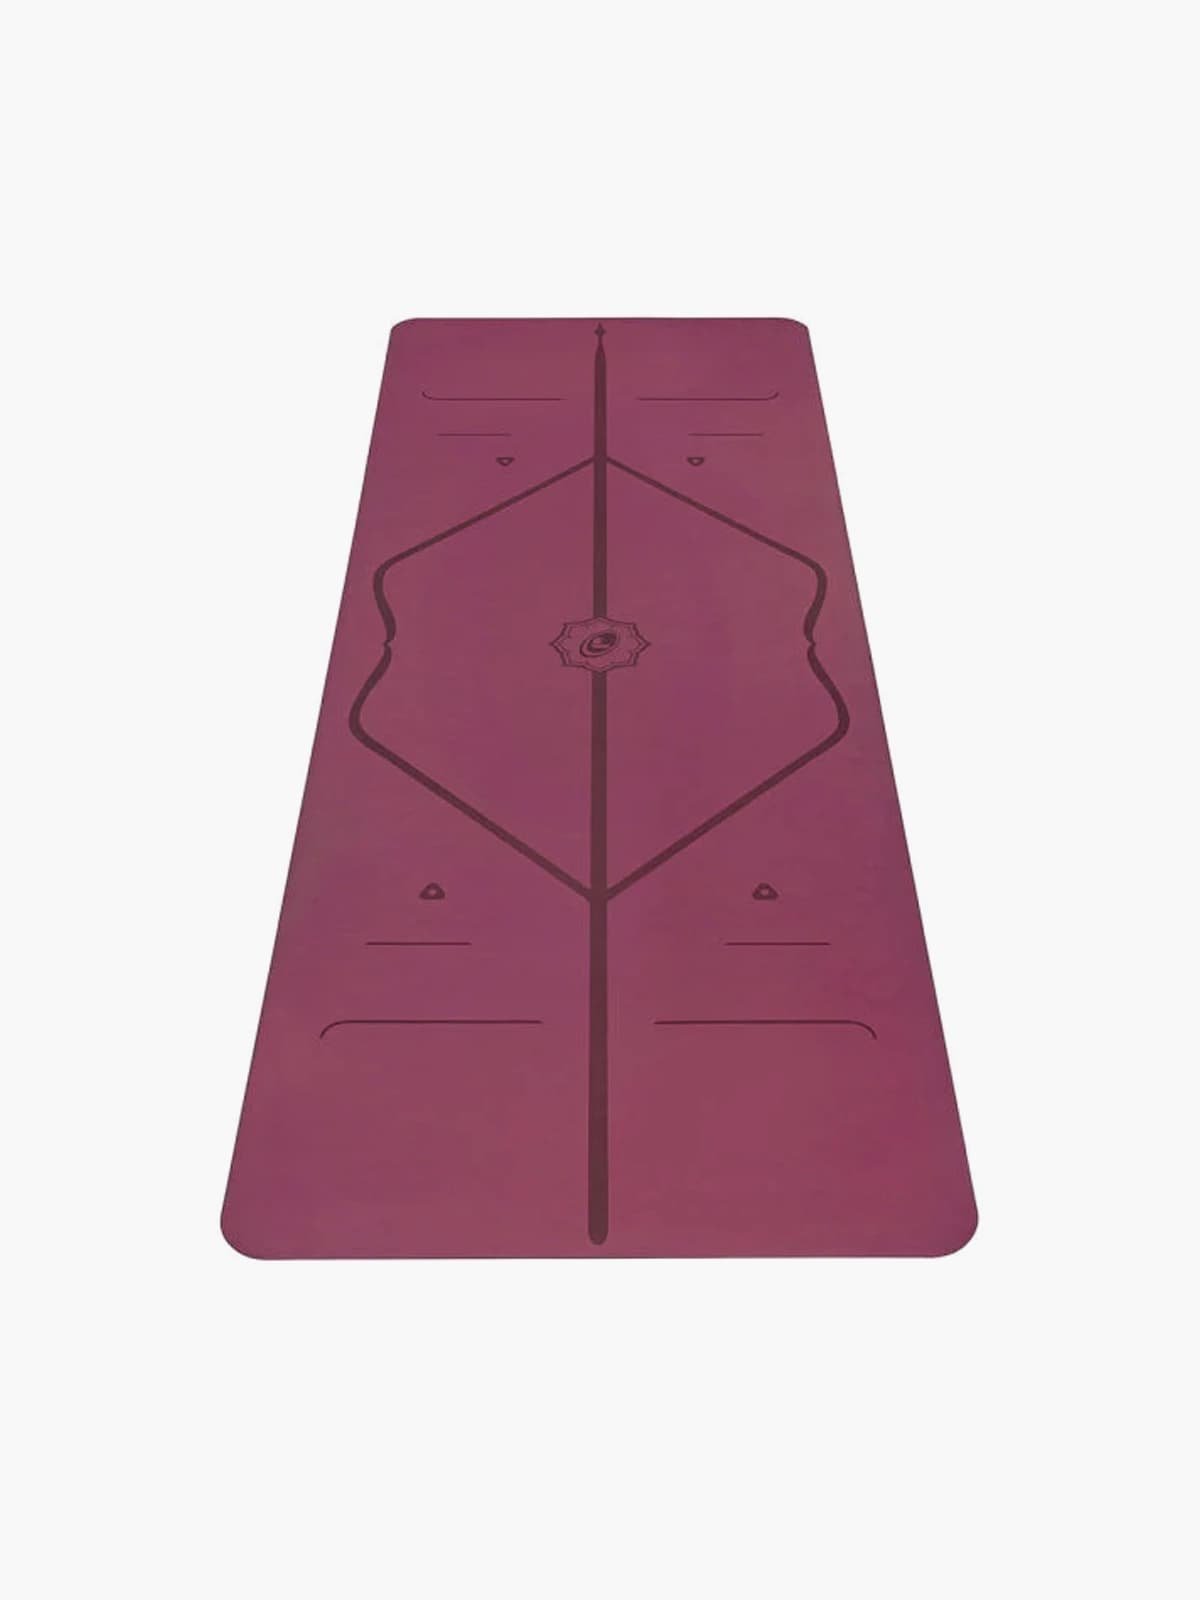 Liforme Yoga Mat ve Liforme Mat Fiyatları – Sayfa 2 –